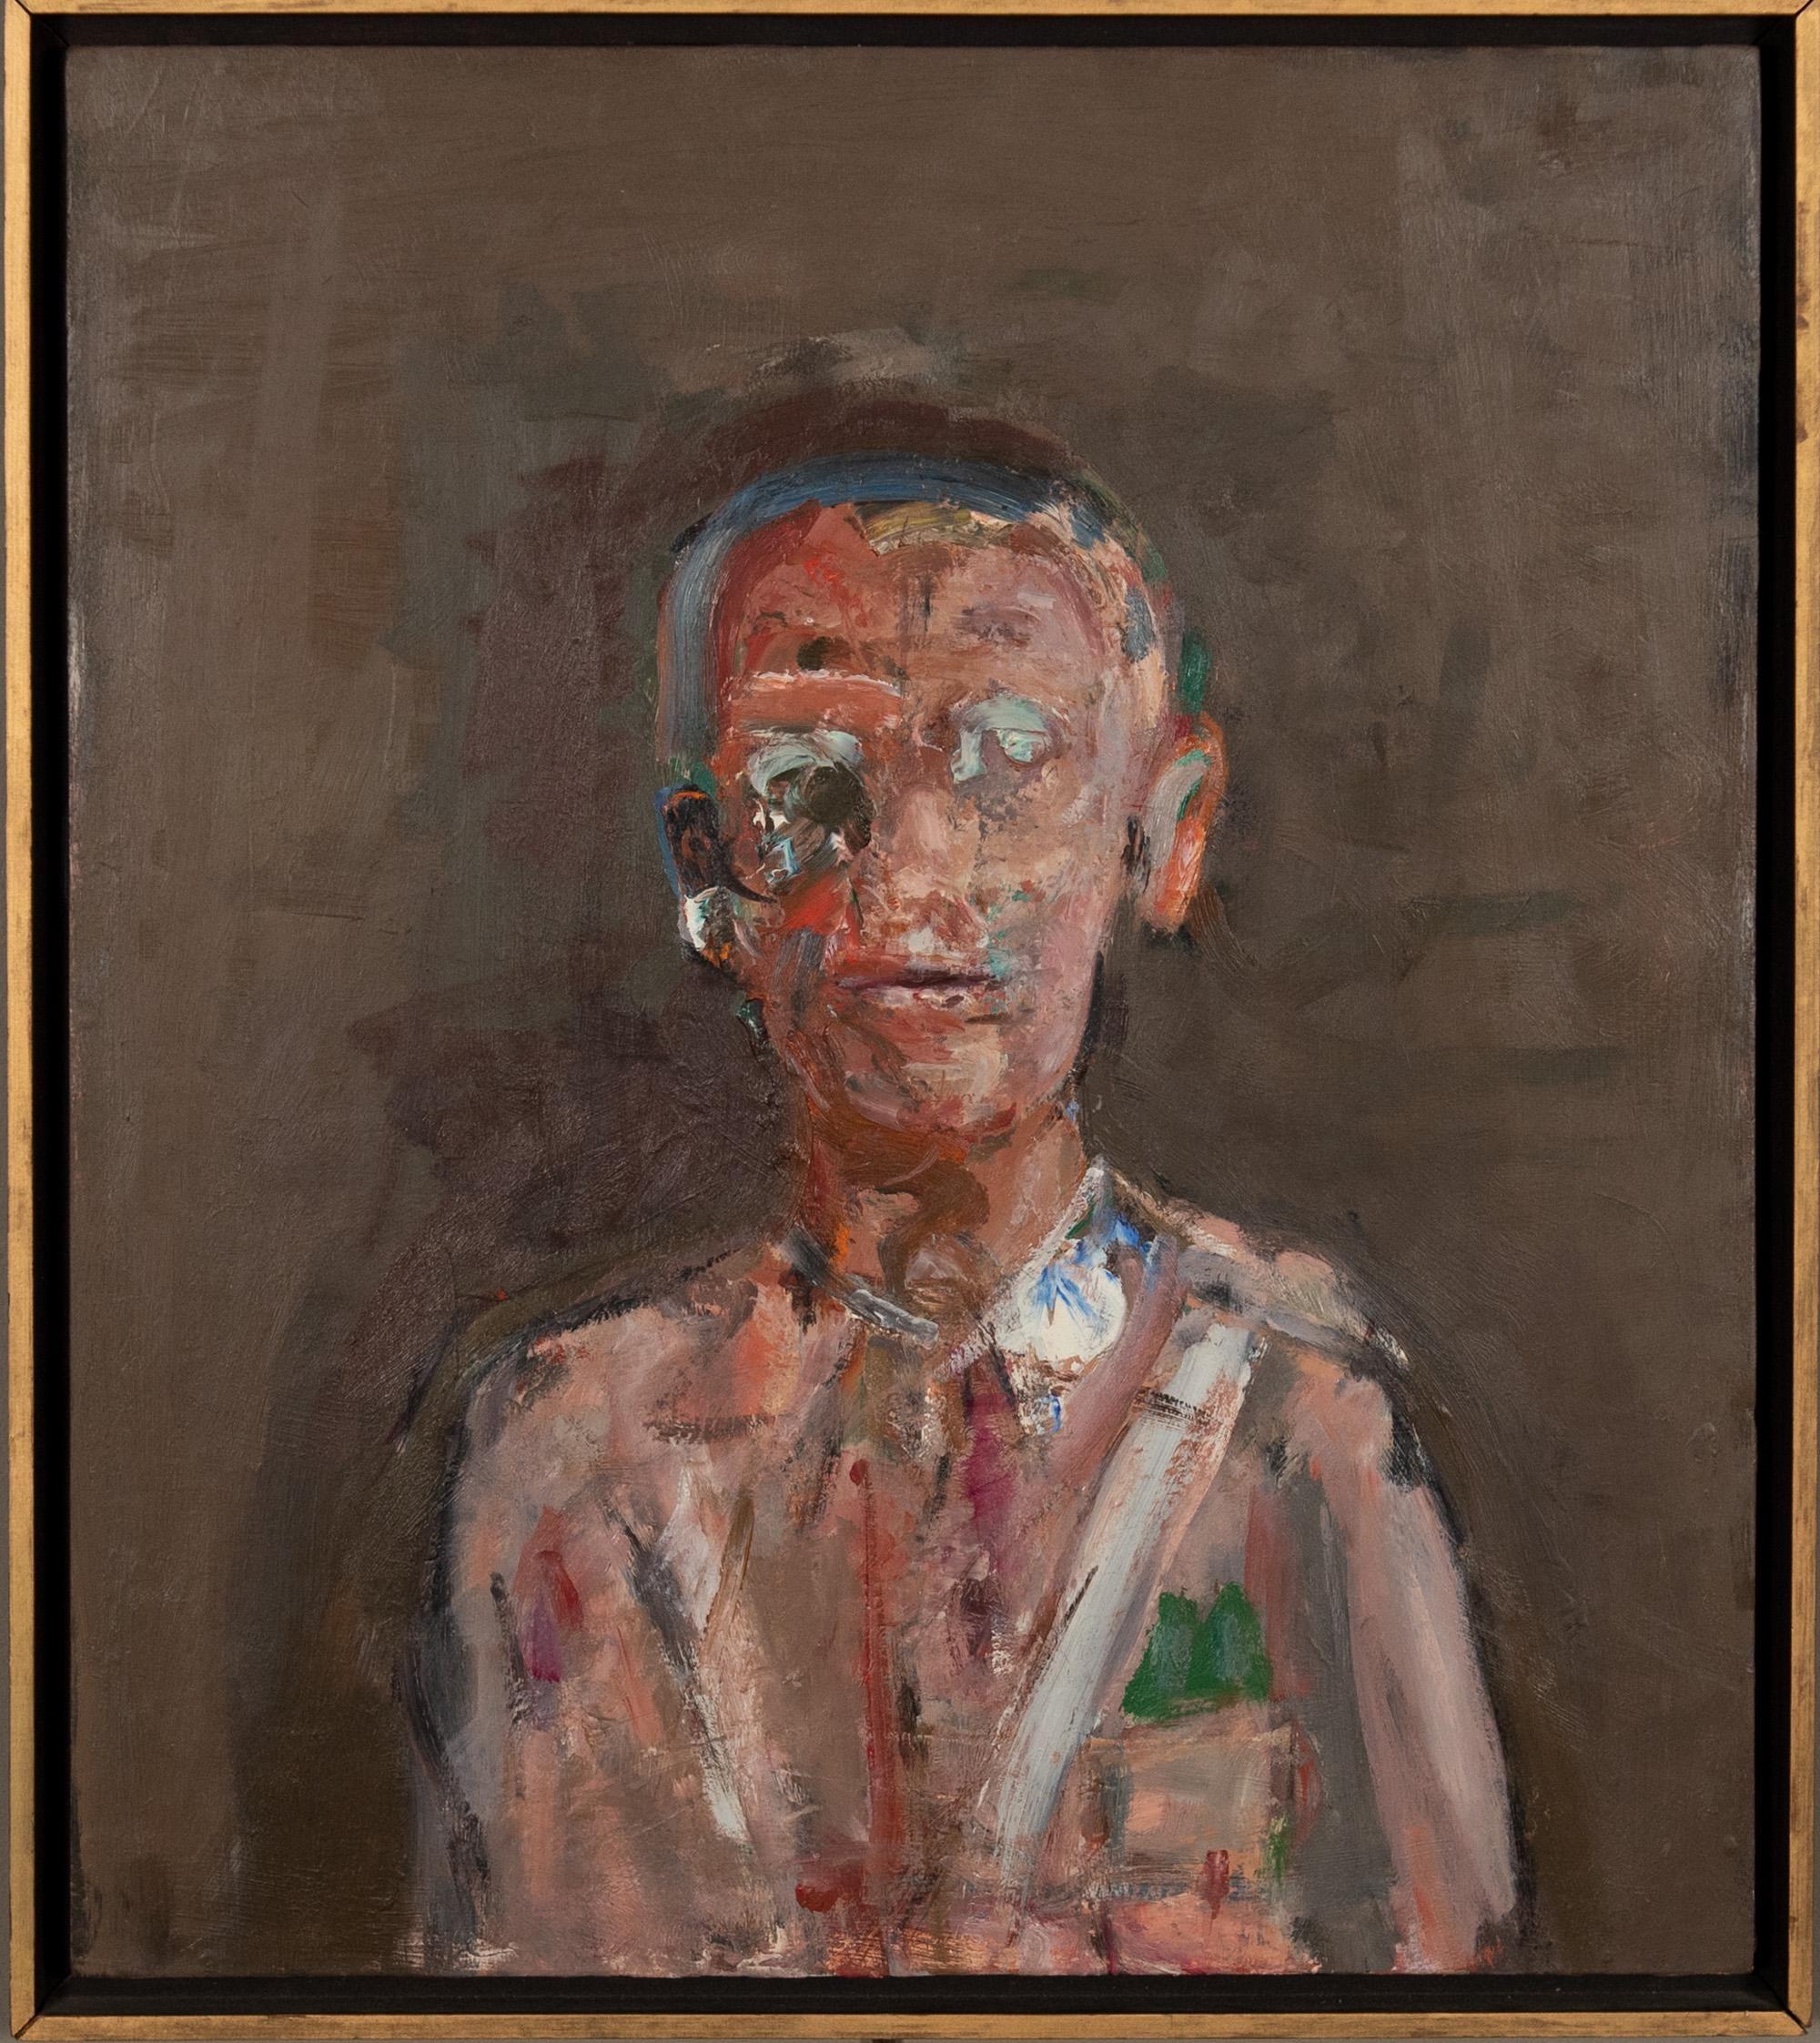 Militärischer Mann, Porträt, figuratives, abstraktes Ölgemälde, amerikanischer modernistischer Künstler – Painting von Dean Richardson